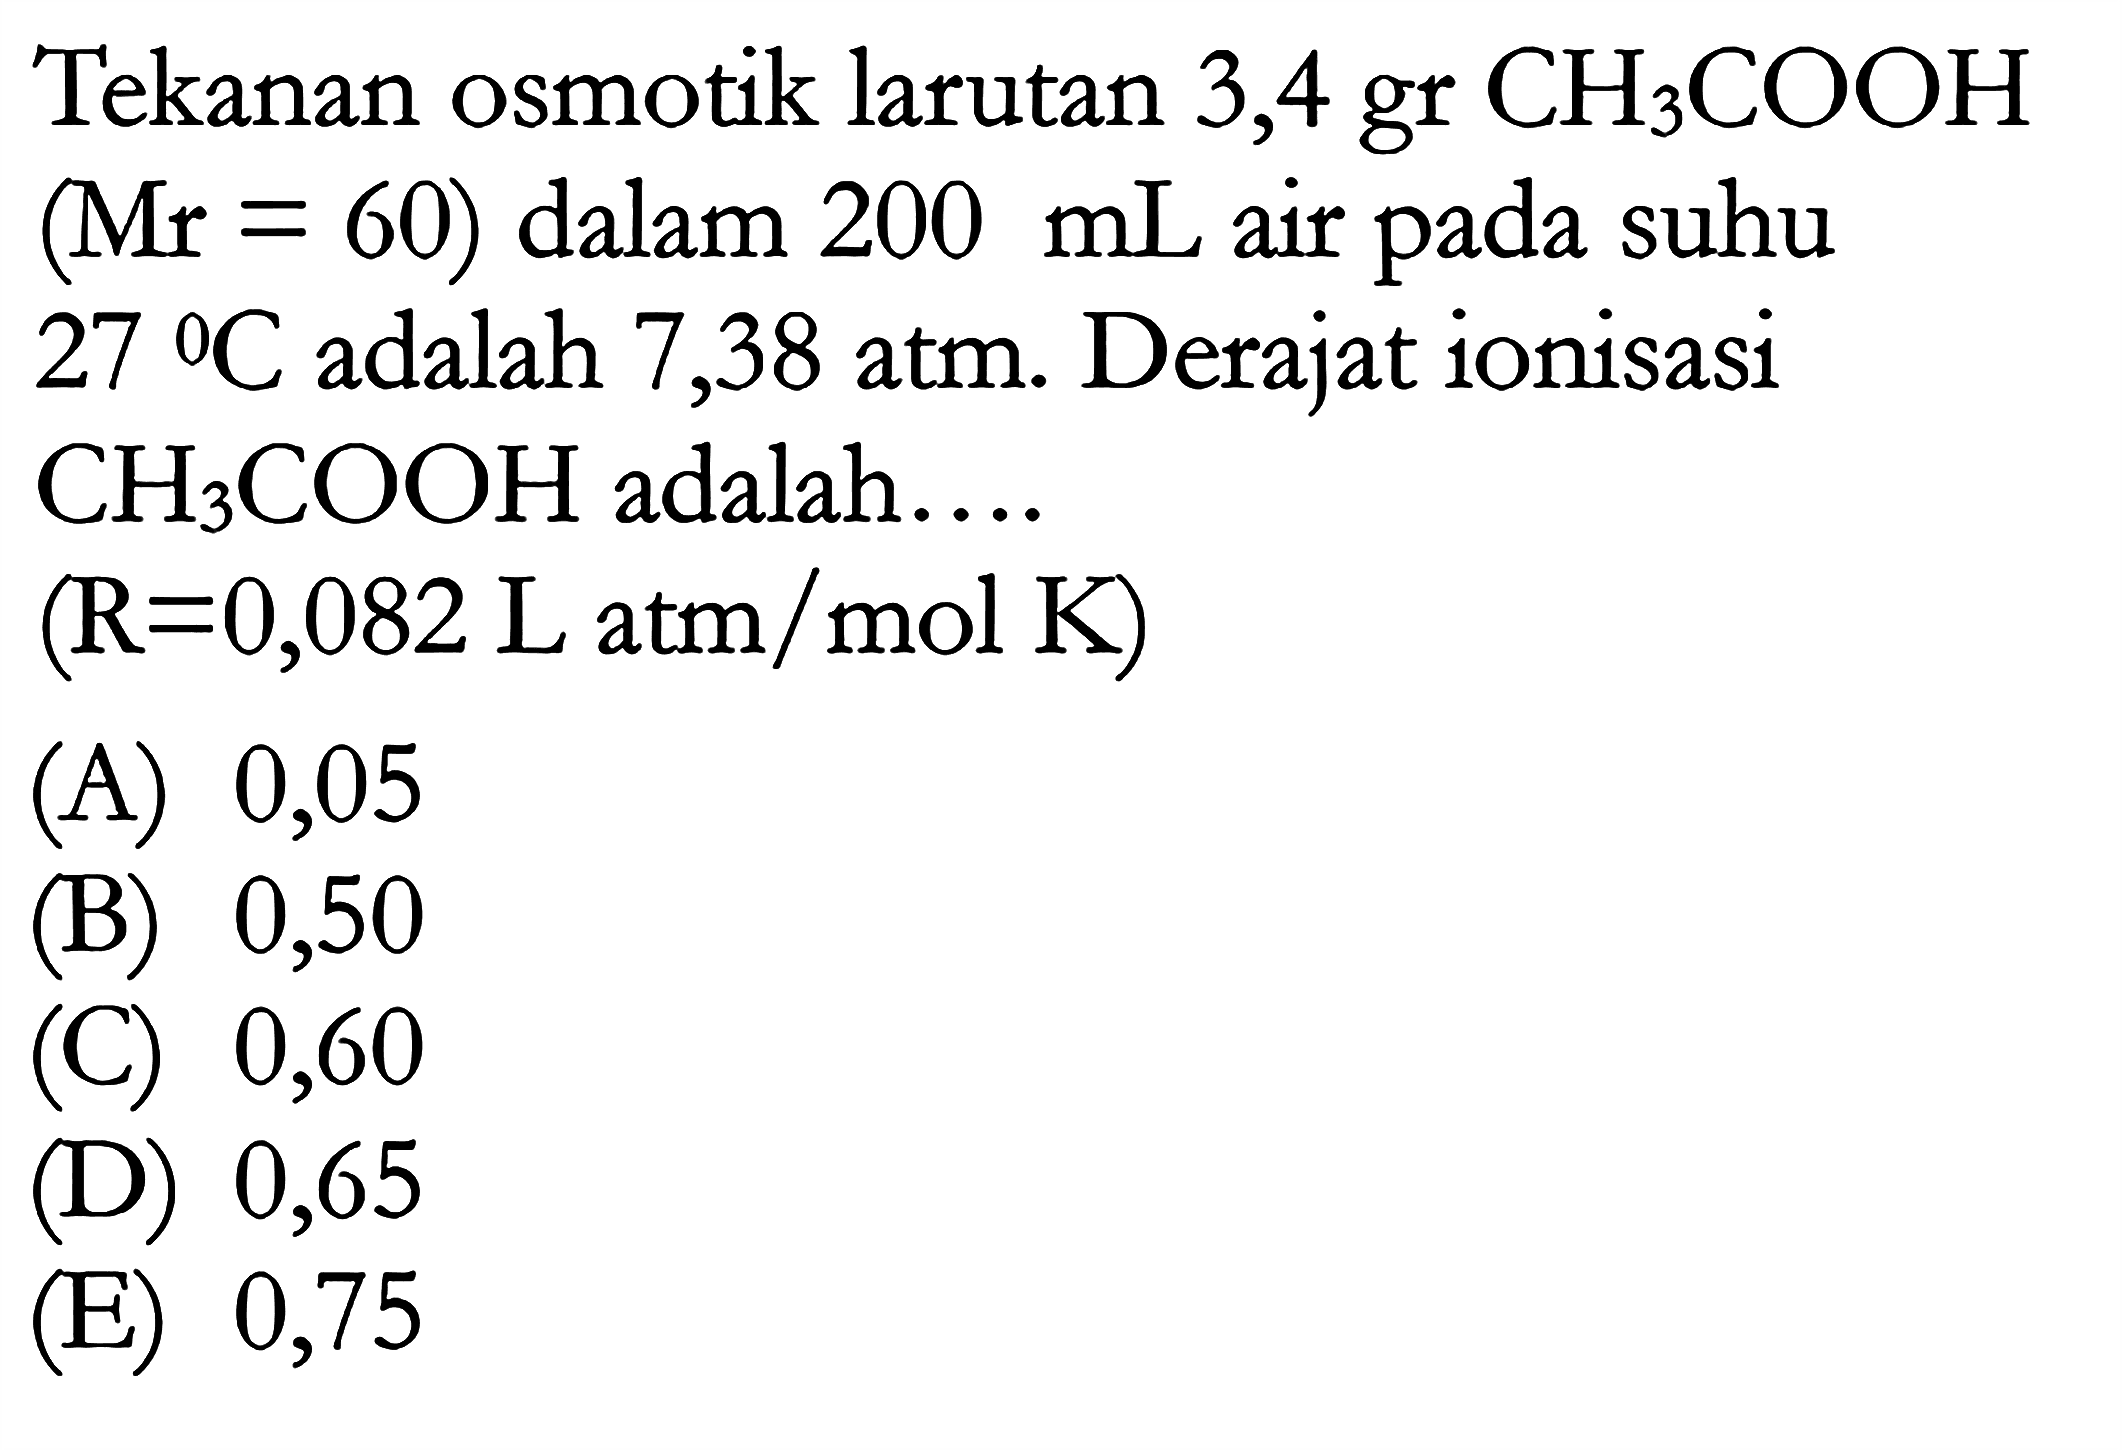 Tekanan osmotik larutan 3,4 gr CH3COOH (Mr = 60) dalam 200 mL air pada suhu 27 C adalah 7,38 atm. Derajat ionisasi CH3COOH adalah.... (R = 0,082 L atm / mol K)